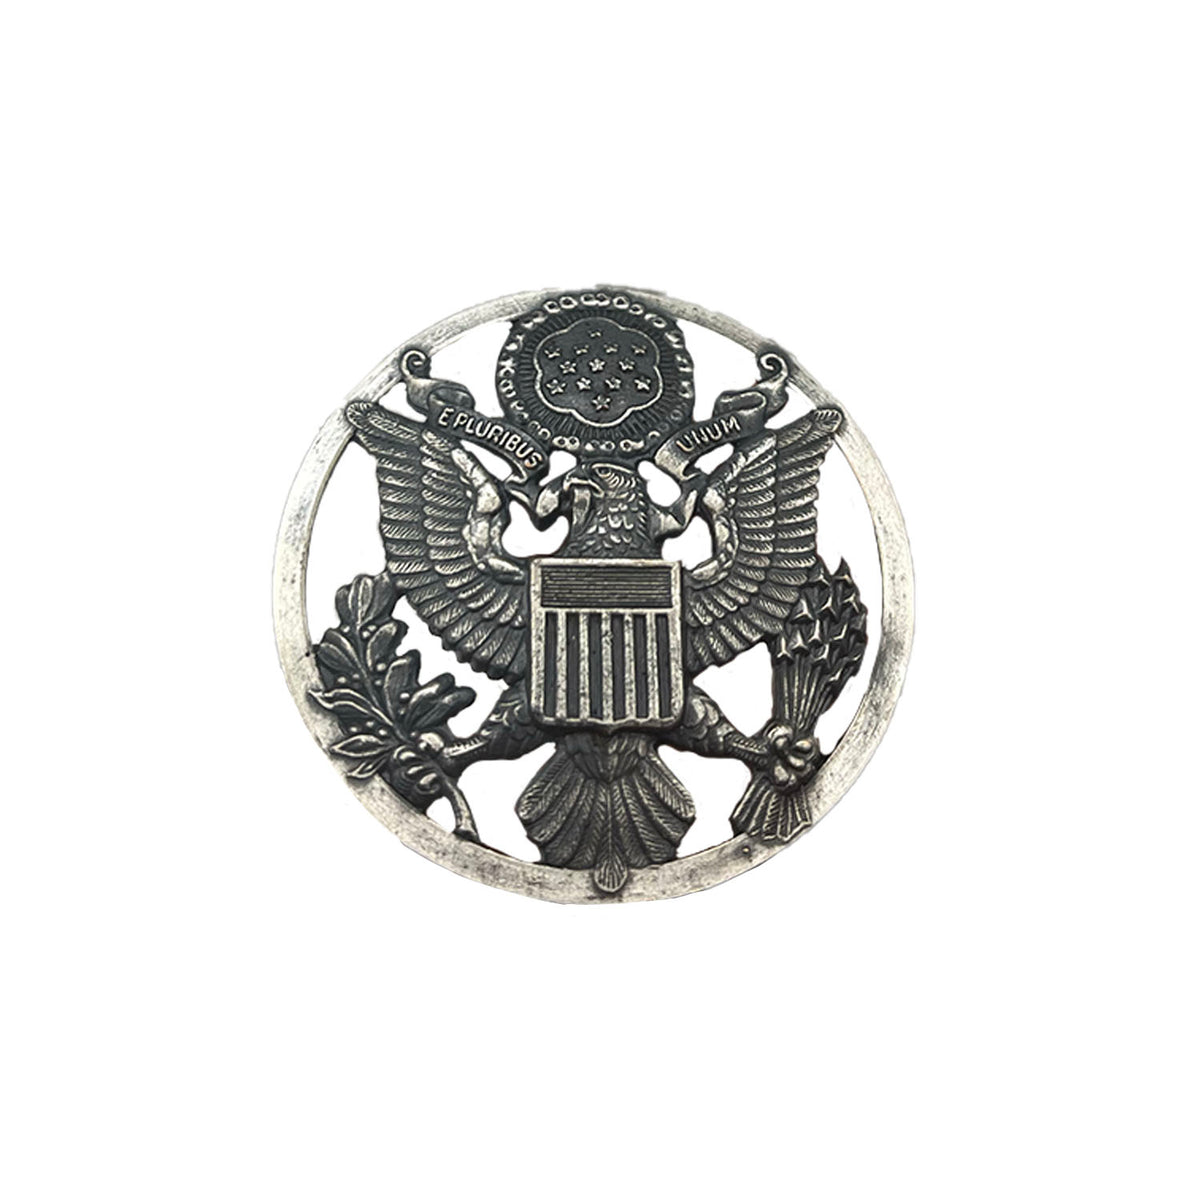 USAF Cap Badge Metal Pin